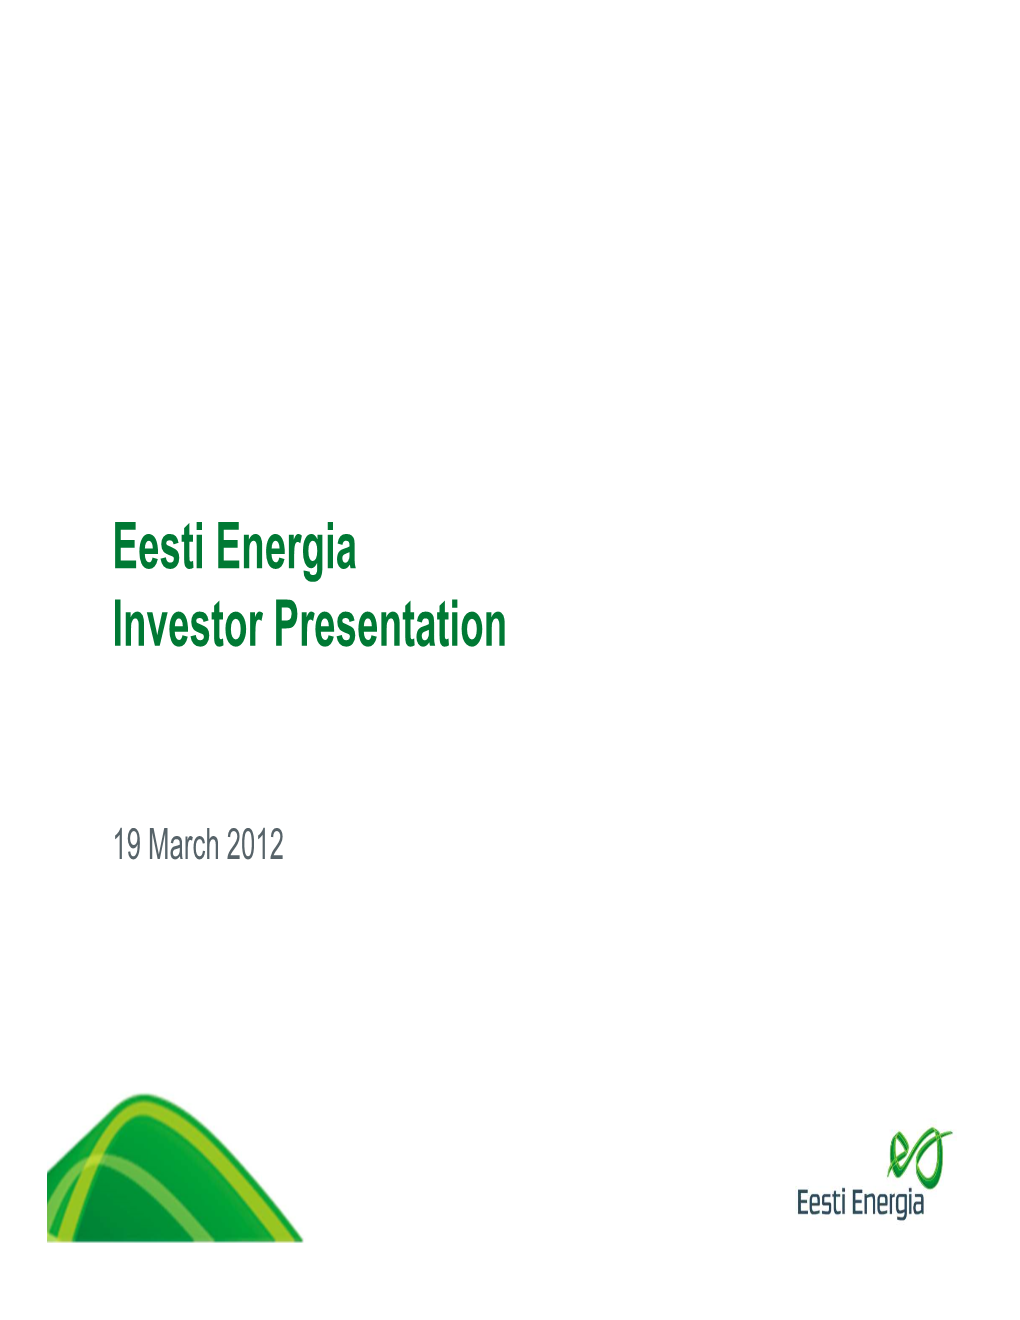 20120316 Eesti Energia Roadshow Presentation Final